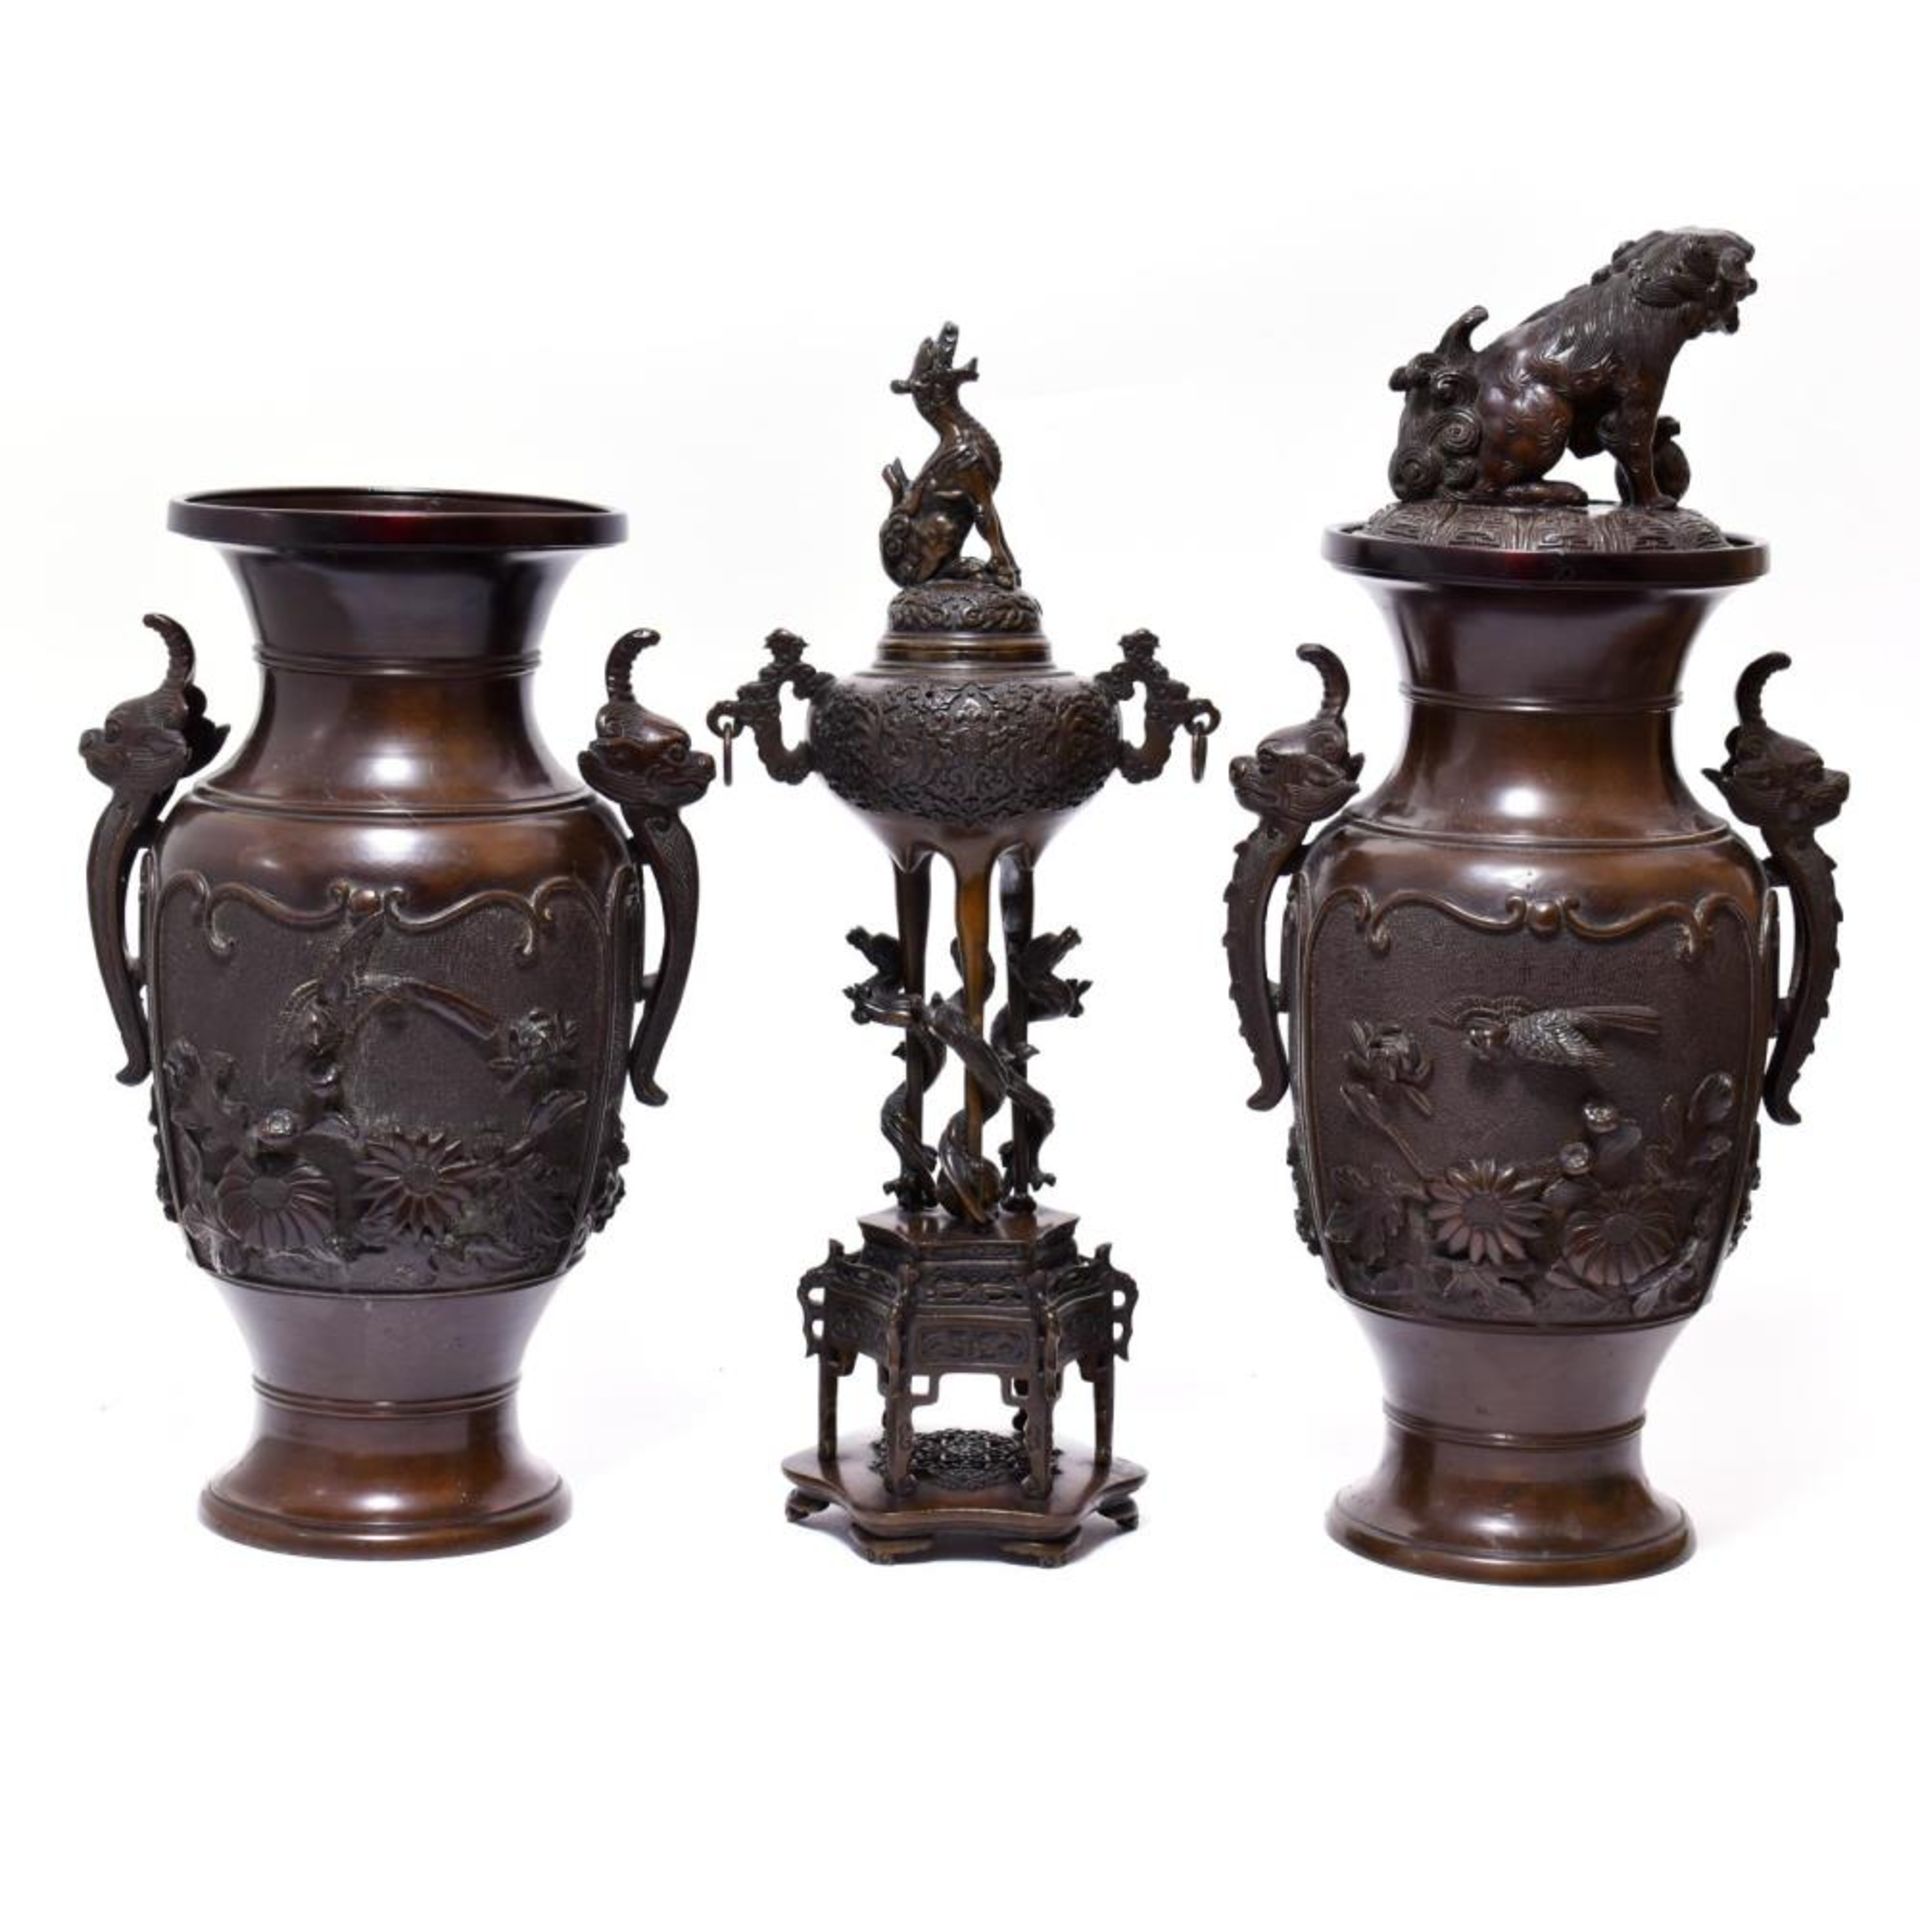 Schalengefäß und zwei Vasen. Bronze, braun patiniert. - Bild 2 aus 2